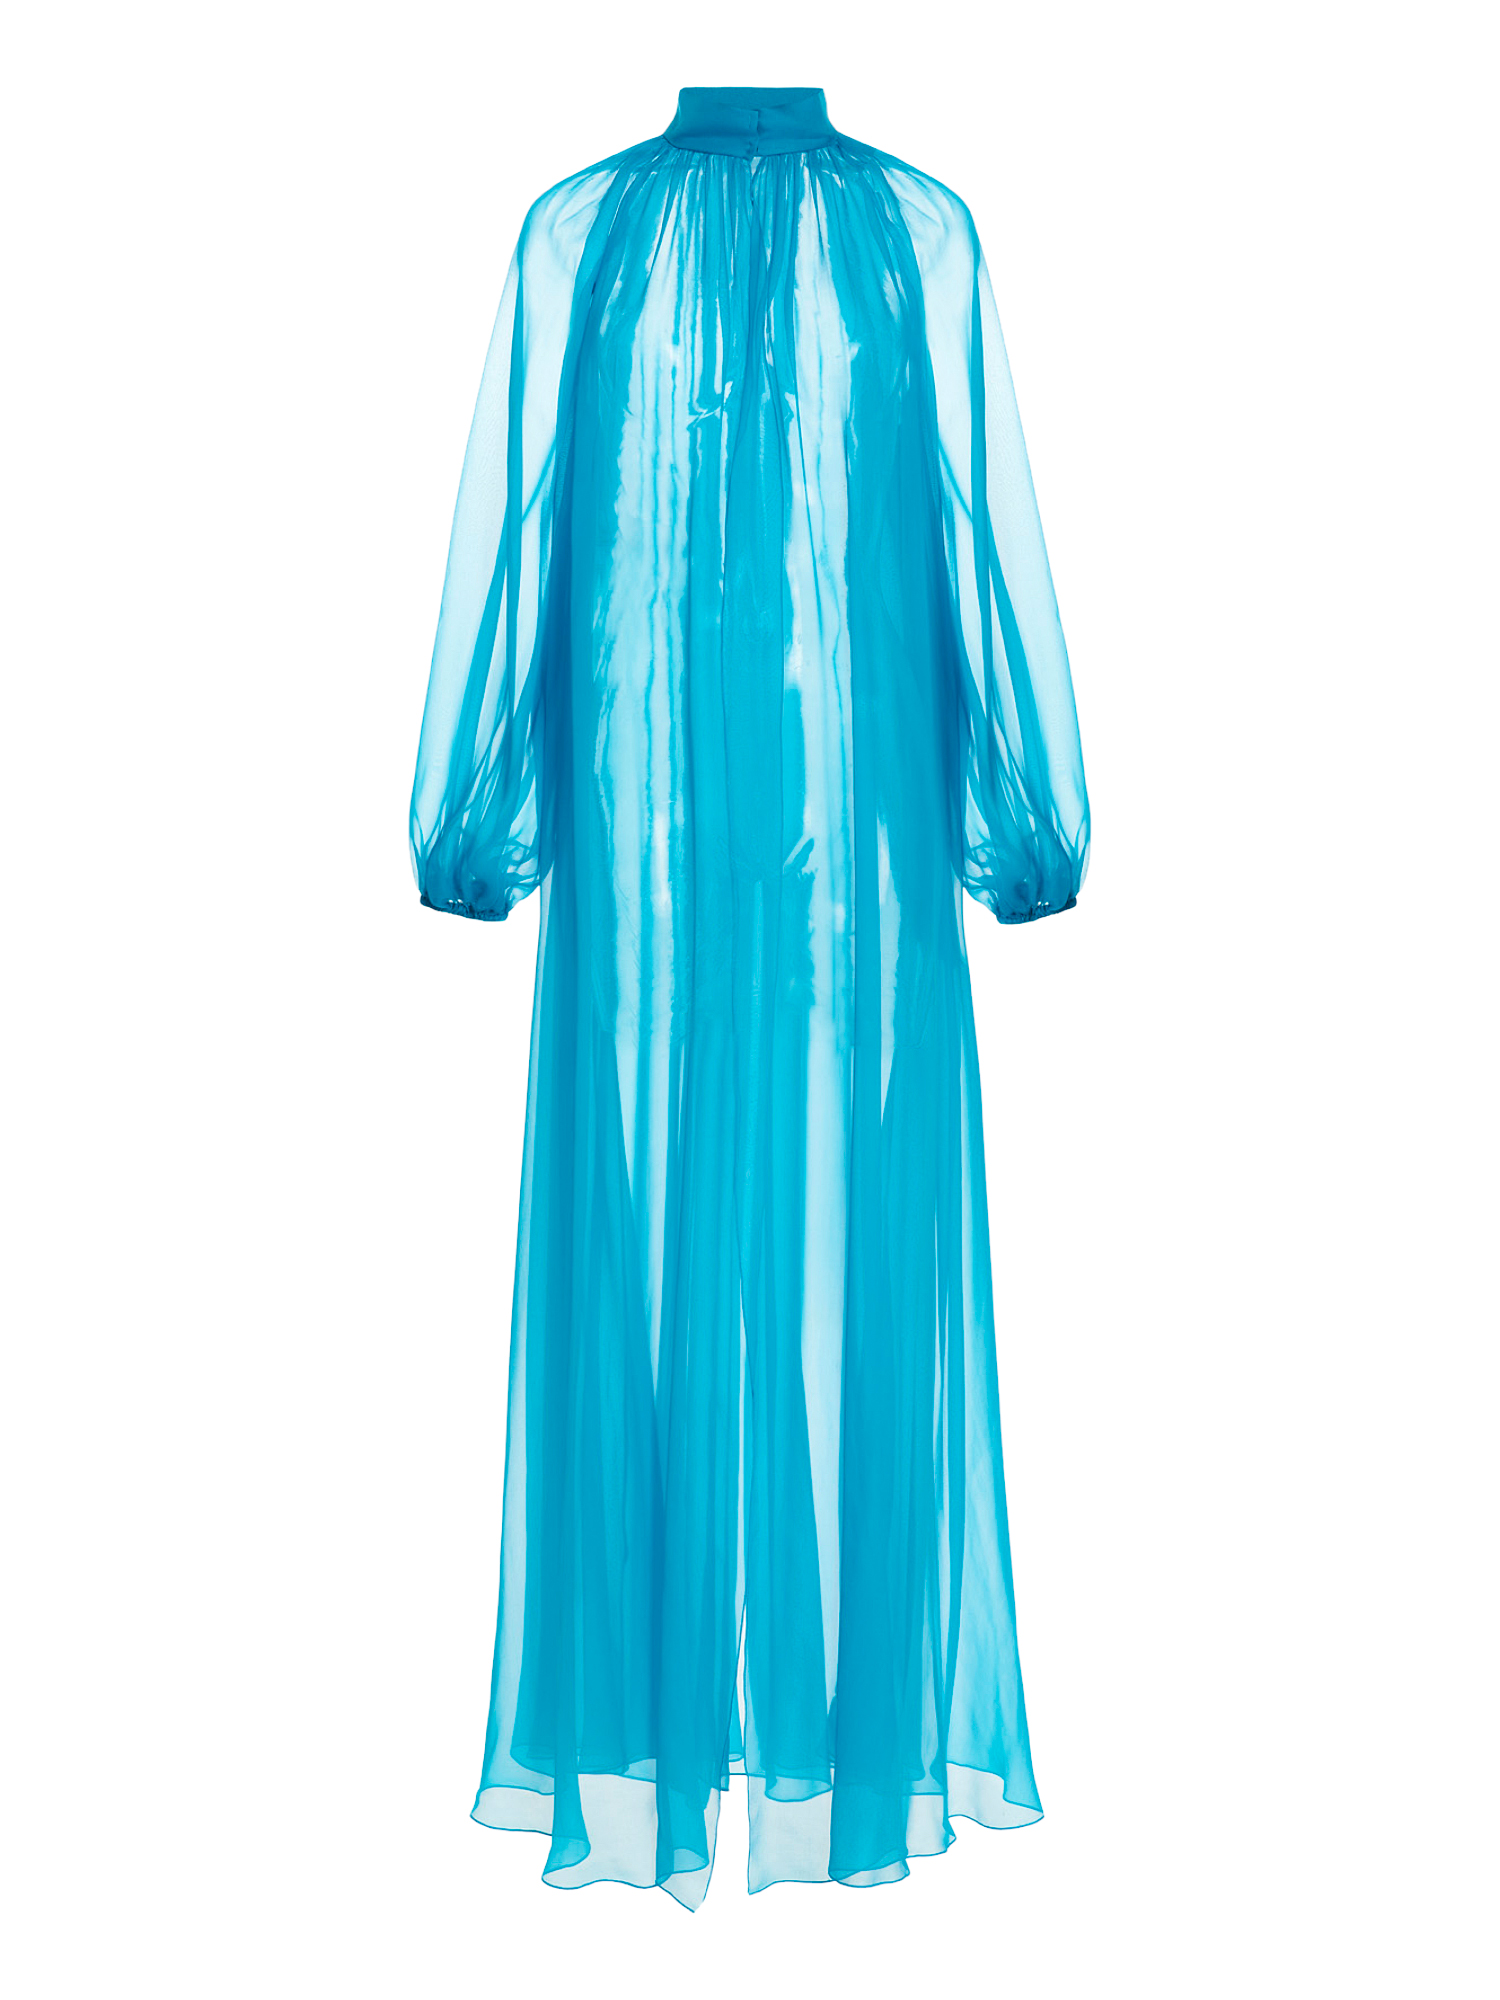 Manteaux Et Blousons Pour Femme - Alberta Ferretti - En Silk Blue - Taille:  -